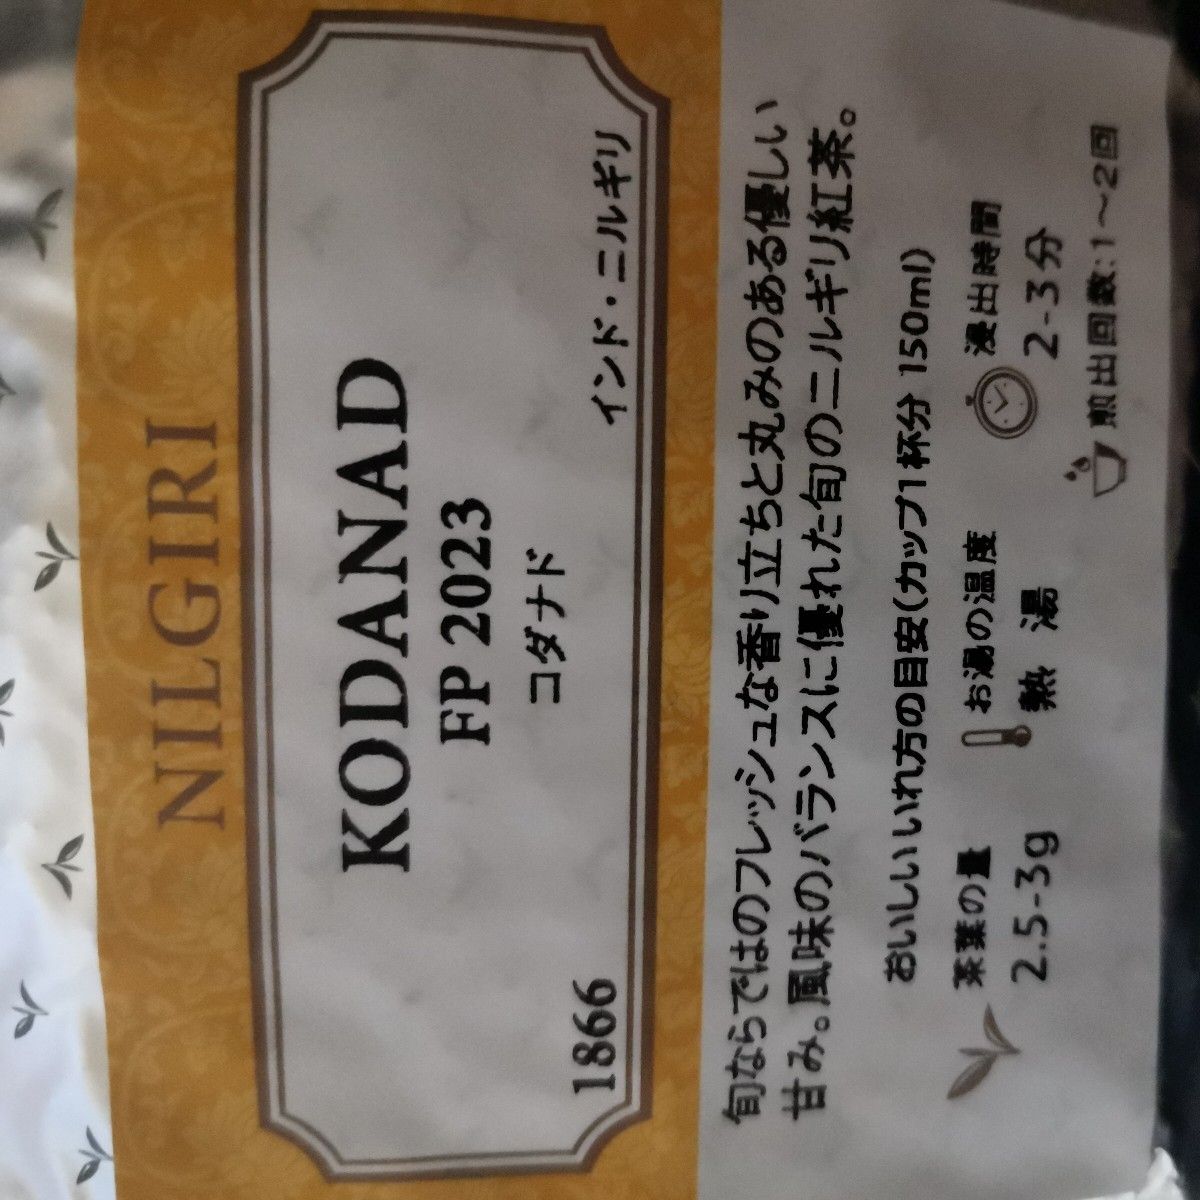 ルピシア ニルギリ 紅茶 4種類セット 【送料無料】 カイルベッタ ハブカル コダナド